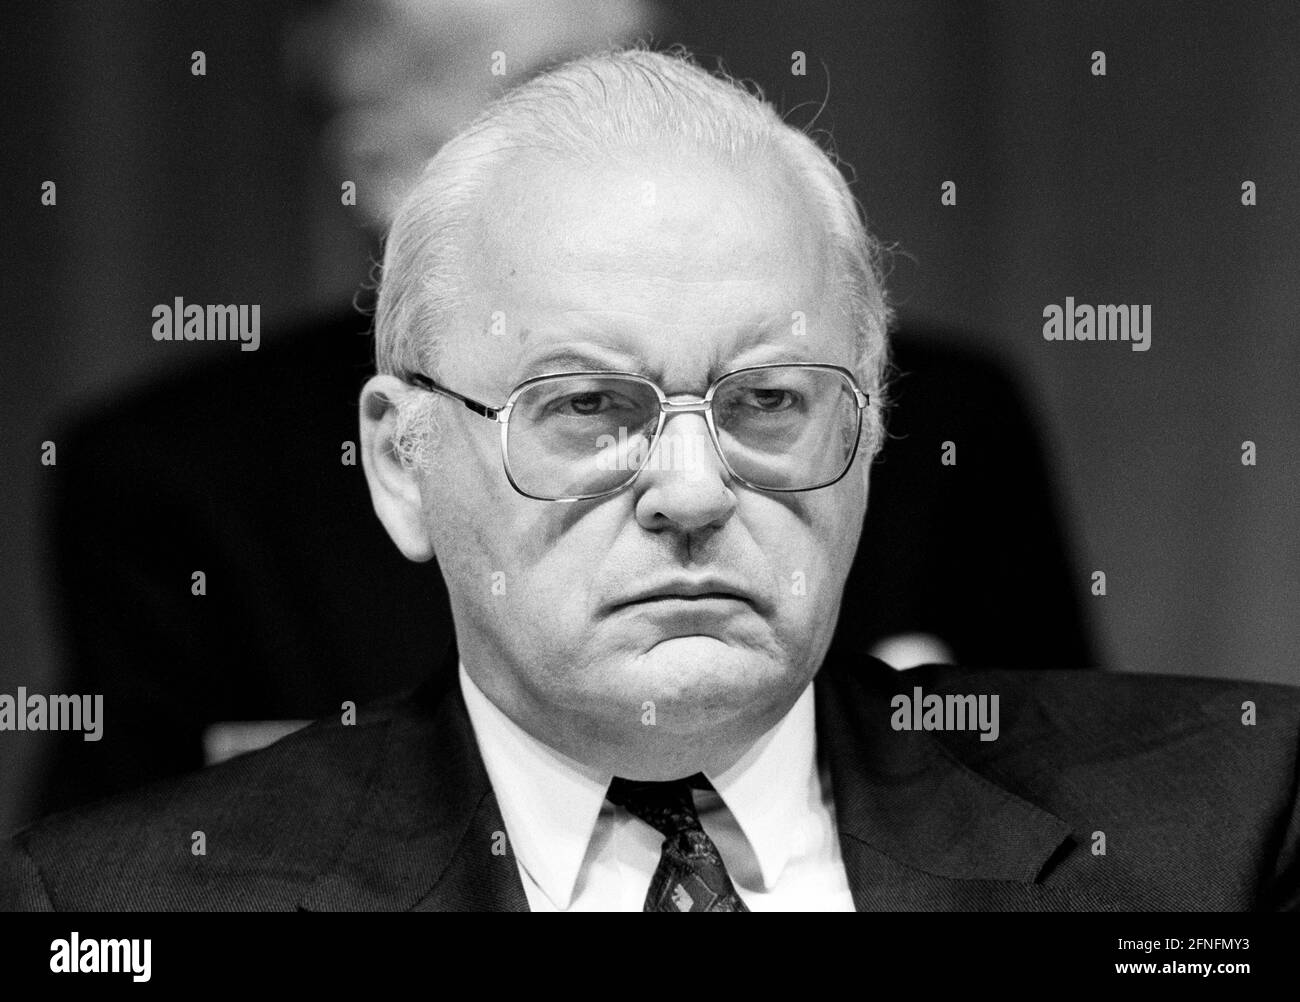 Roman HERZOG , Président de la Cour constitutionnelle fédérale , juin 1993 [traduction automatique] Banque D'Images